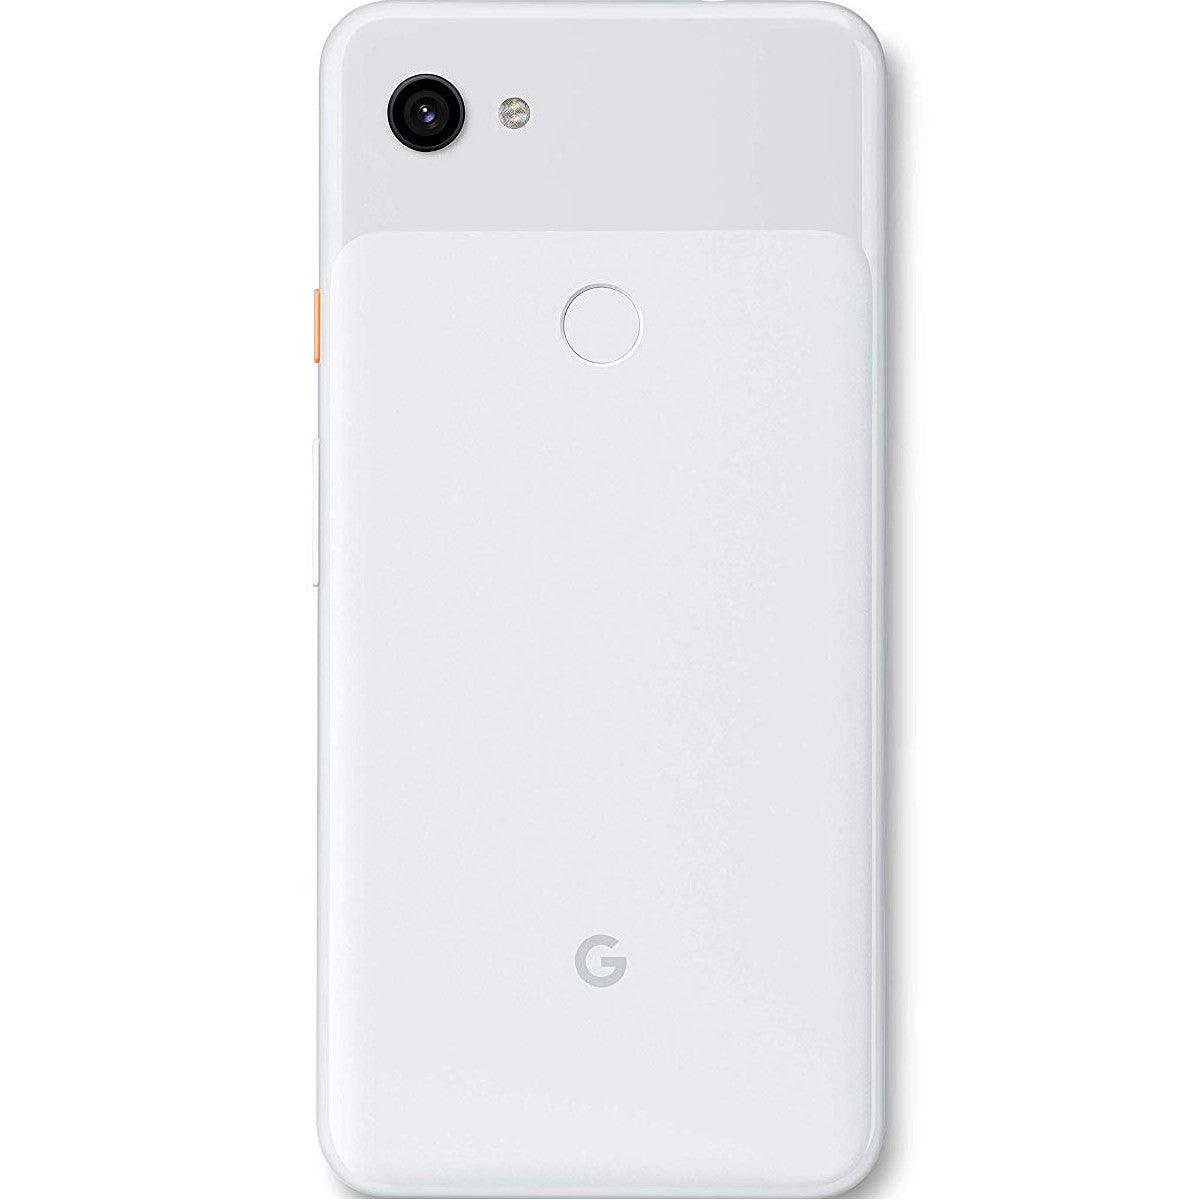 Pixel 3a XL White 64GB Grade 3 - Good - GoodTech